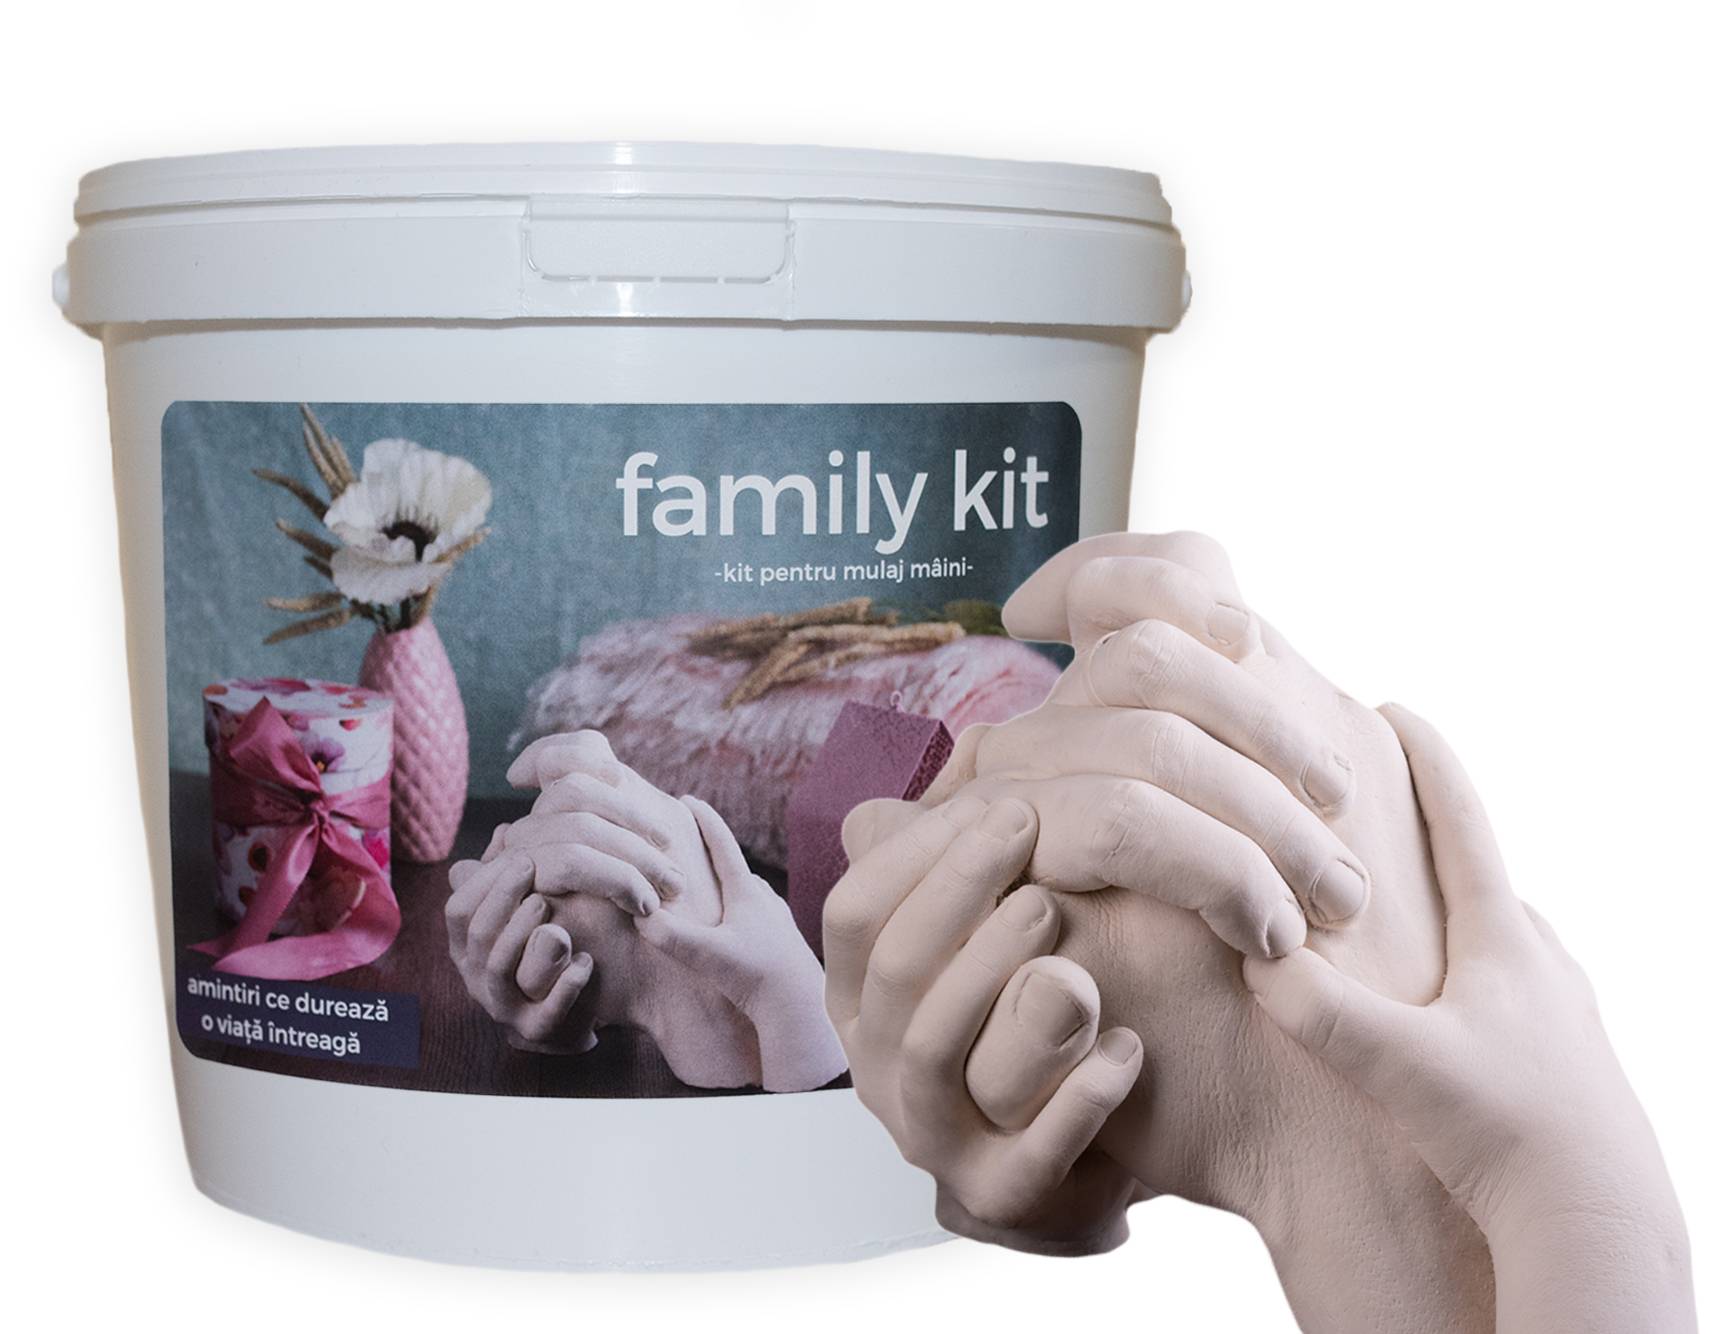 FamilyKit - kit mulaj maini pentru familie, 3-5 maini adulte | Memo Shop